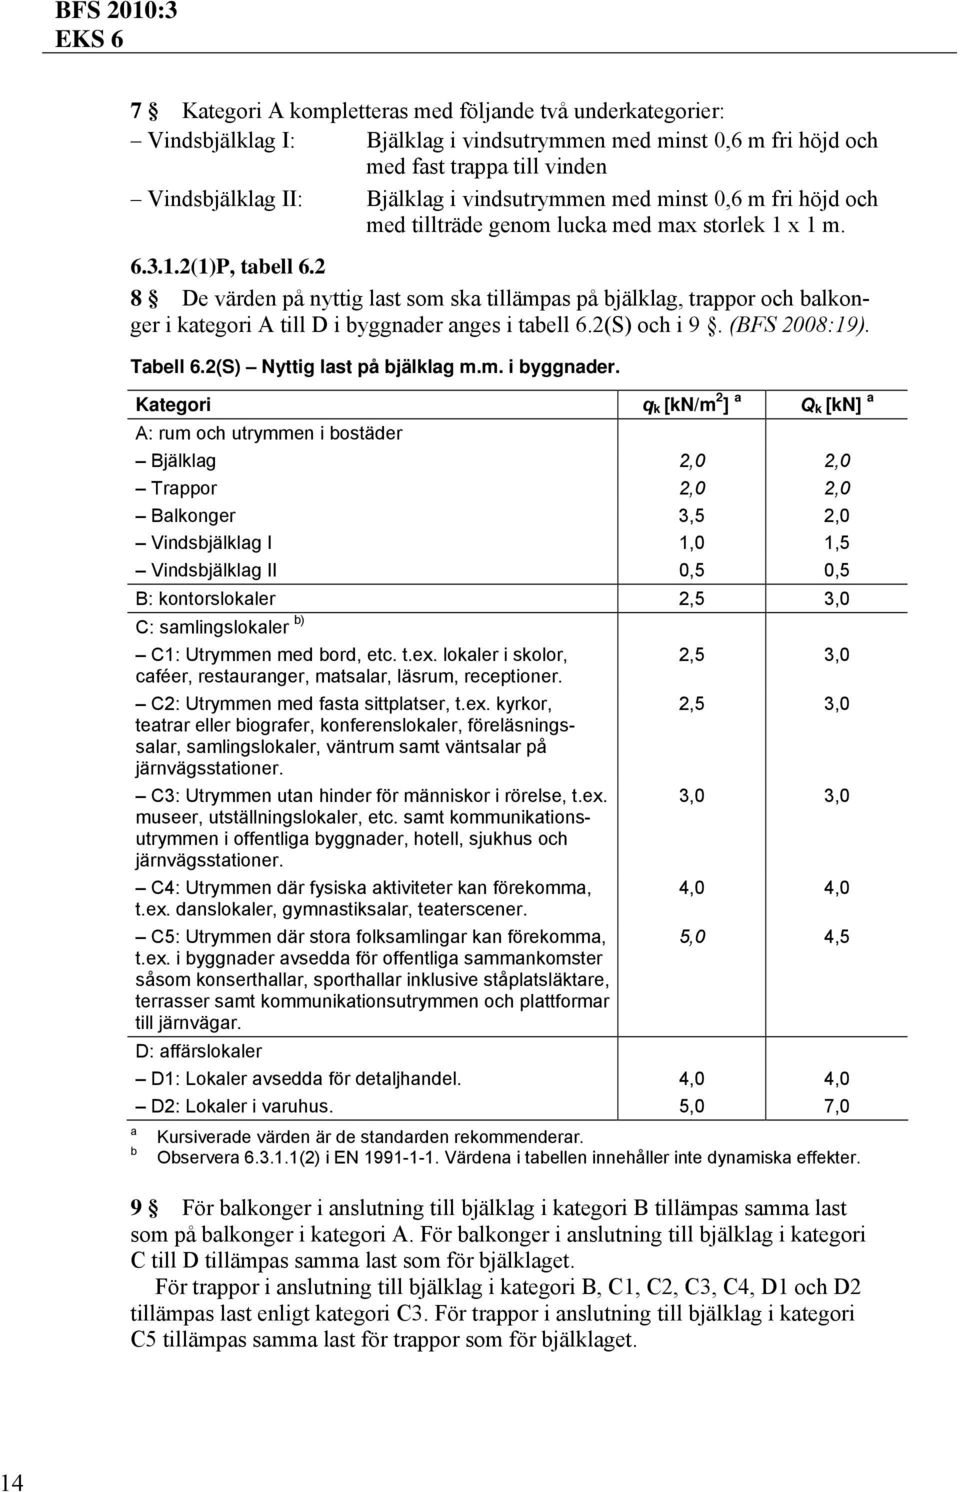 2 8 De värden på nyttig last som ska tillämpas på bjälklag, trappor och balkonger i kategori A till D i byggnader anges i tabell 6.2(S) och i 9. (BFS 2008:19). Tabell 6.2(S) Nyttig last på bjälklag m.